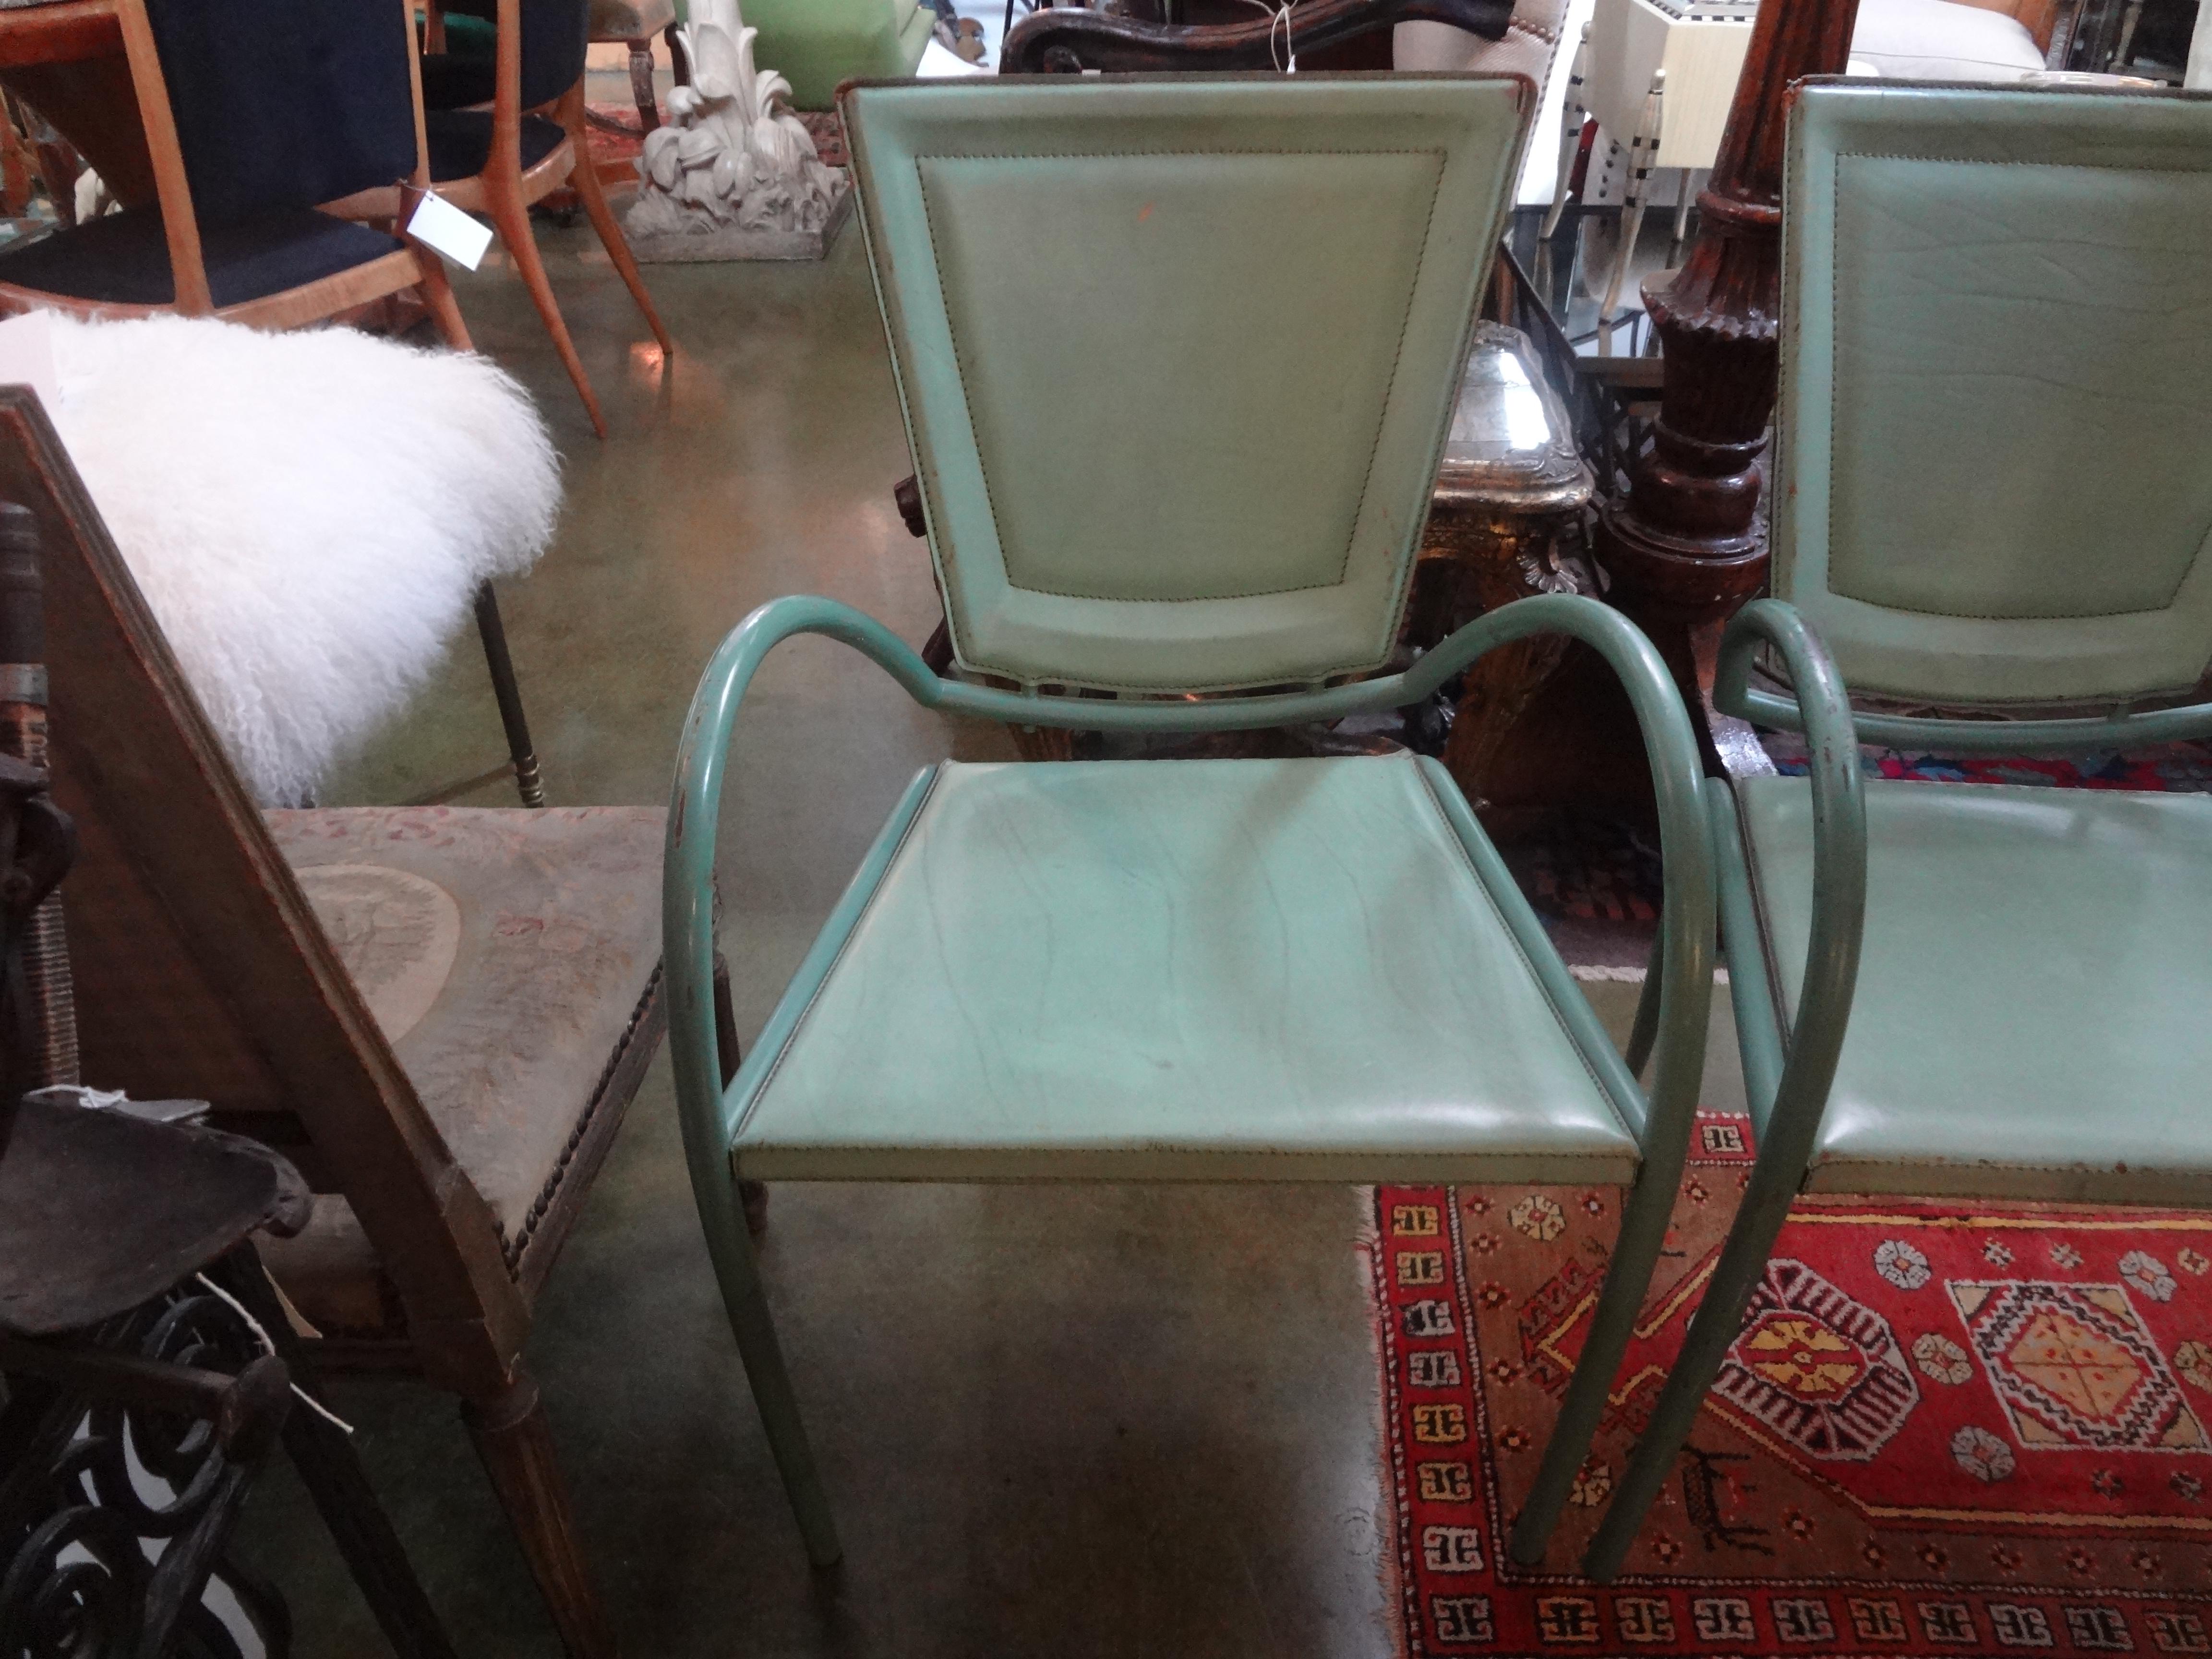 Paire de chaises italiennes en fer et cuir Sawaya et Moroni.
Superbe paire de chaises italiennes en fer et cuir de Sawaya & Moroni, fabriquées à Milan. Ces chaises d'appoint italiennes sont dans un fabuleux fer vert et cuir surpiqué vert et